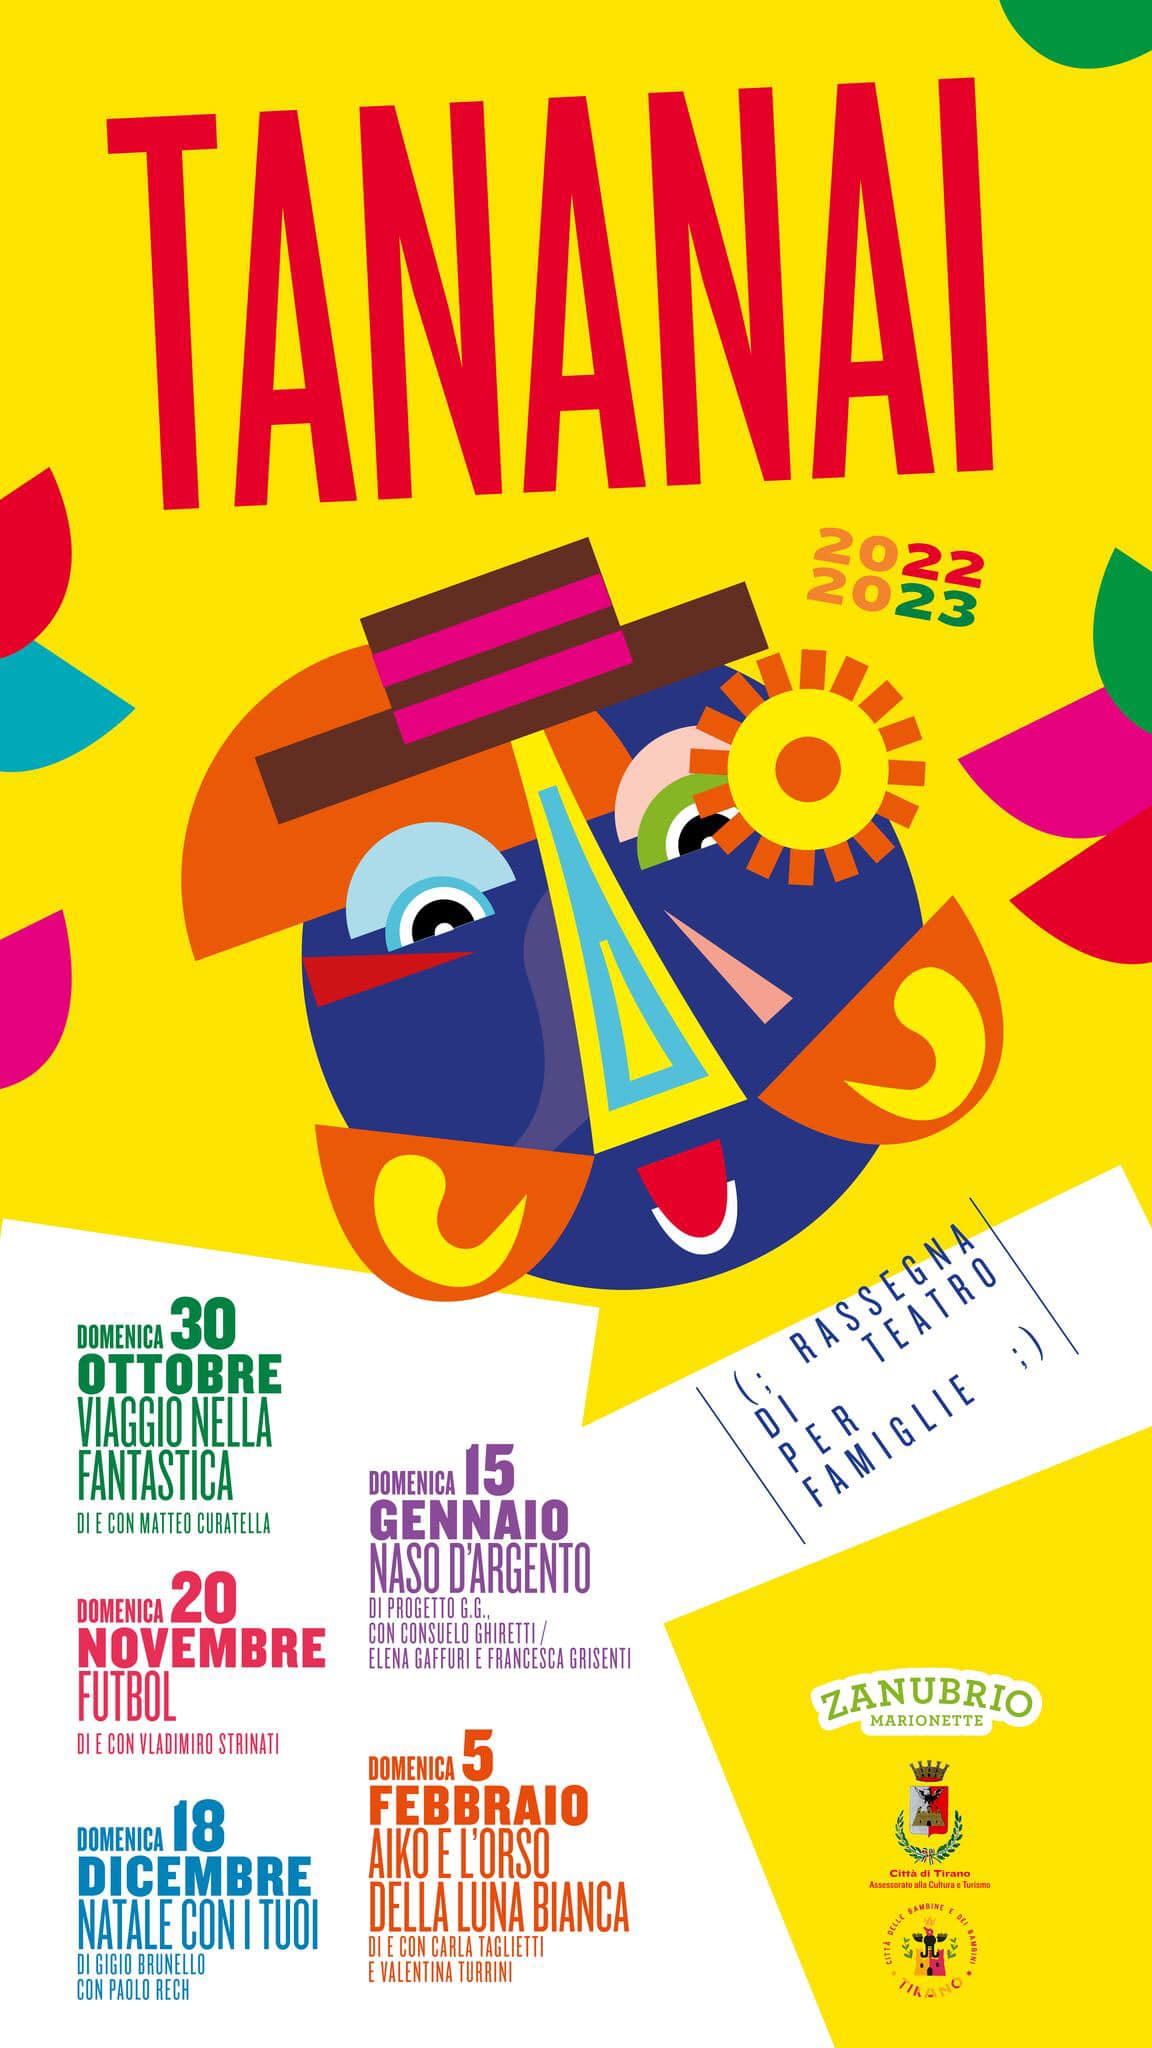 La magia del teatro per famiglie torna a Tirano con l’8° edizione del “Tananai”